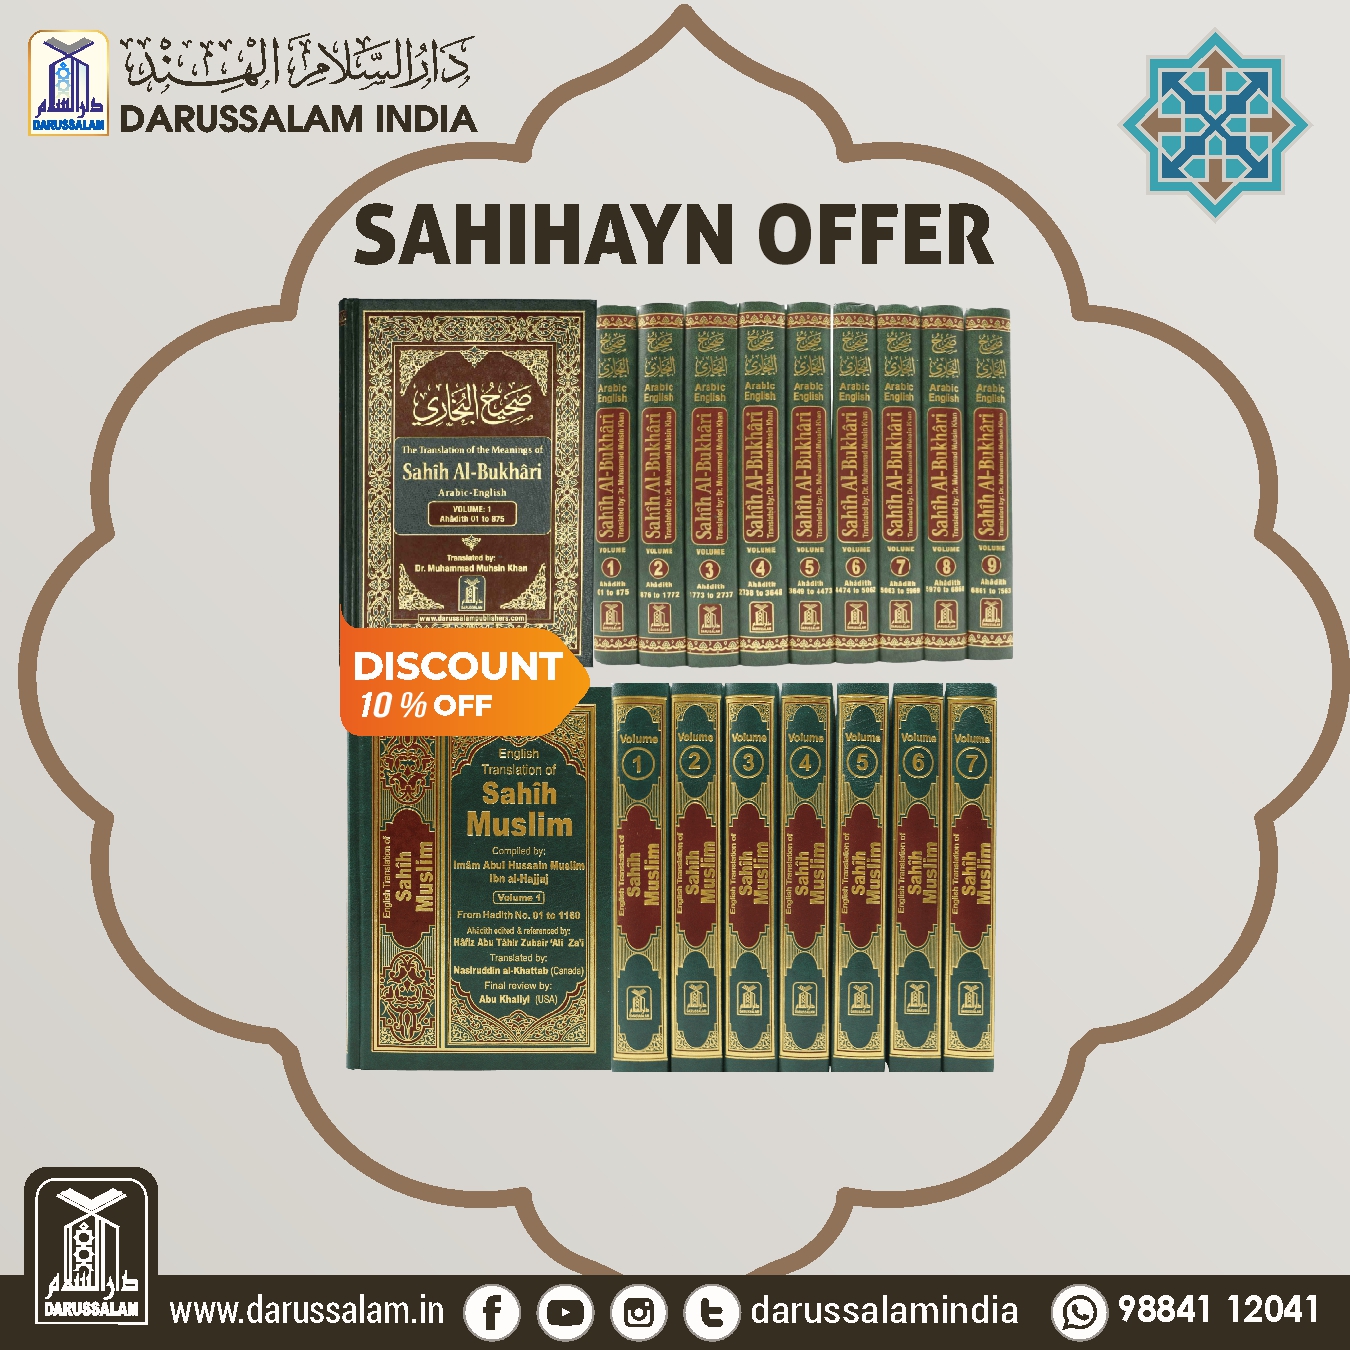 Sahihayn offer